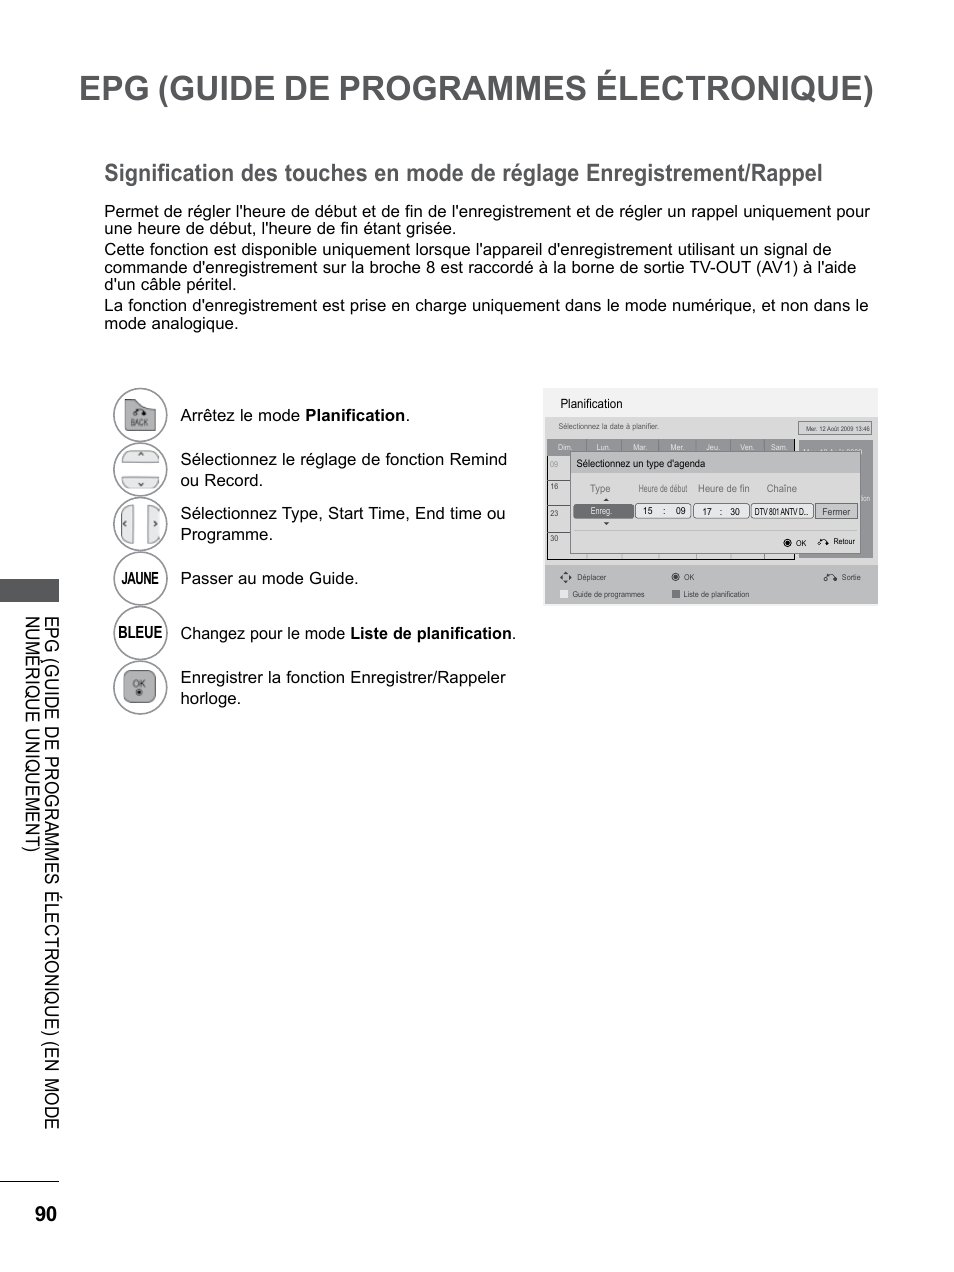 Signification des touches en mode de réglage, Enregistrement/rappel, Epg (guide de programmes électronique) | LG 32LE5310 Manuel d'utilisation | Page 138 / 206